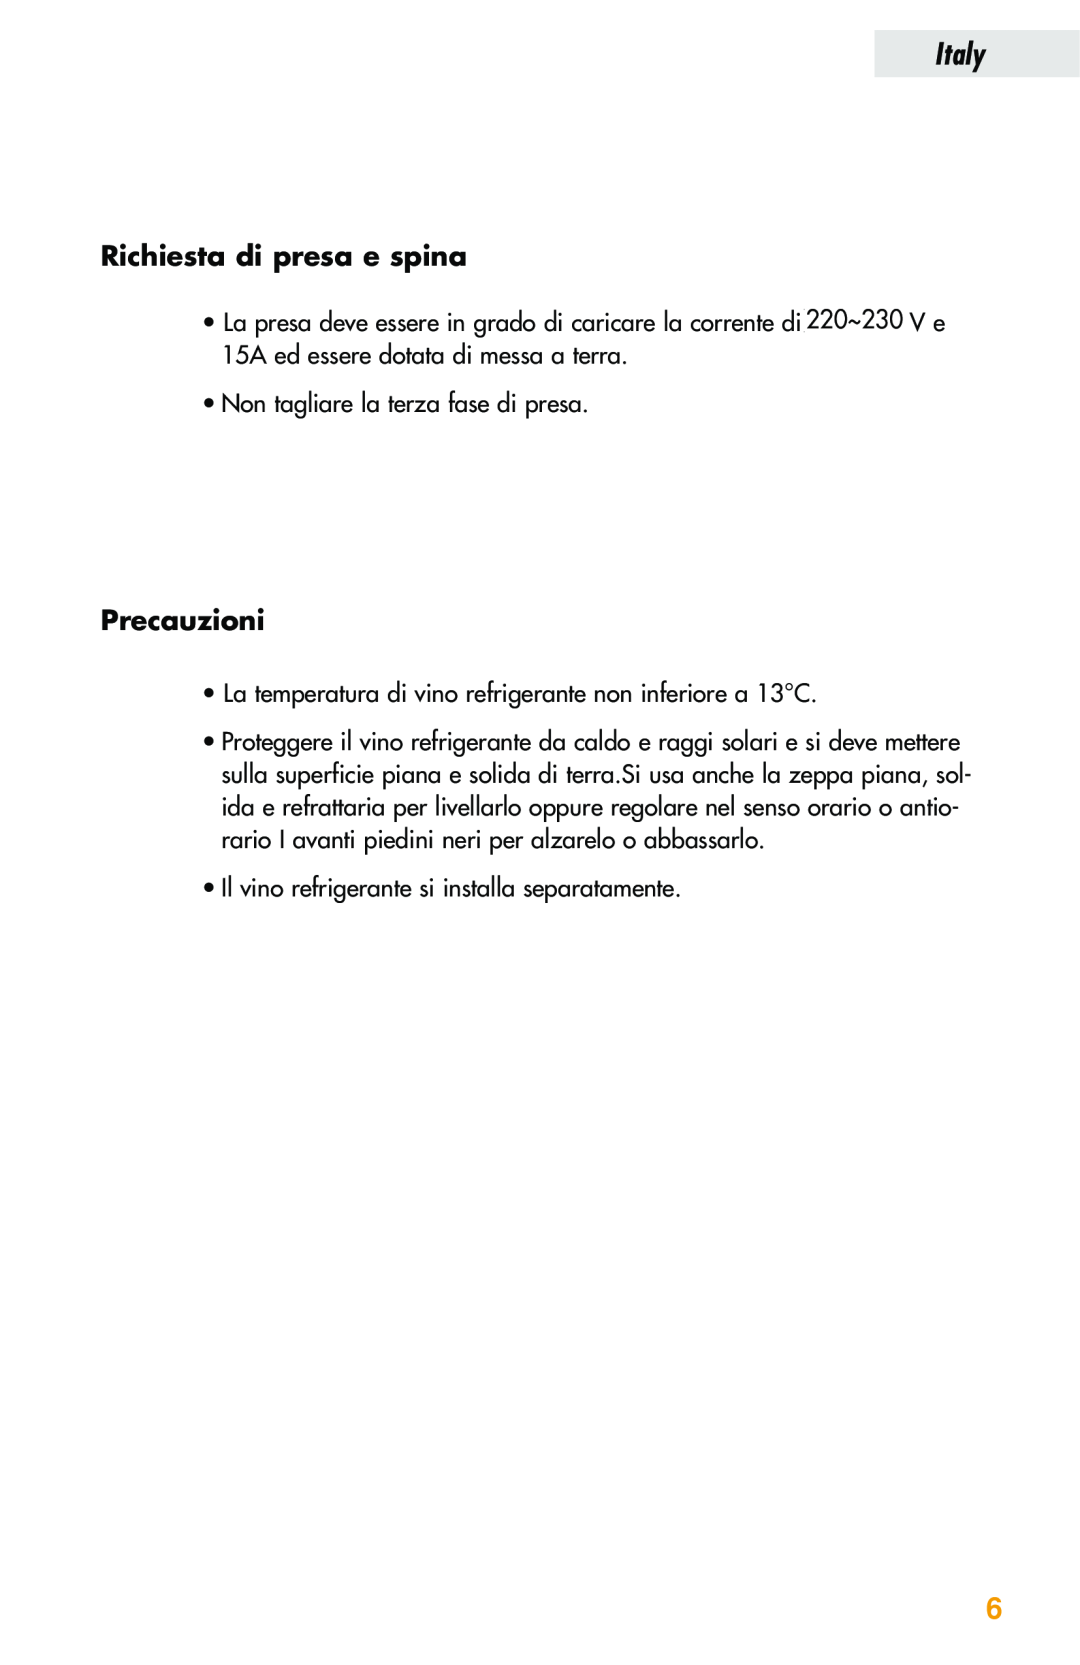 Haier JC-82GB manual Richiesta di presa e spina, Precauzioni, Italy 